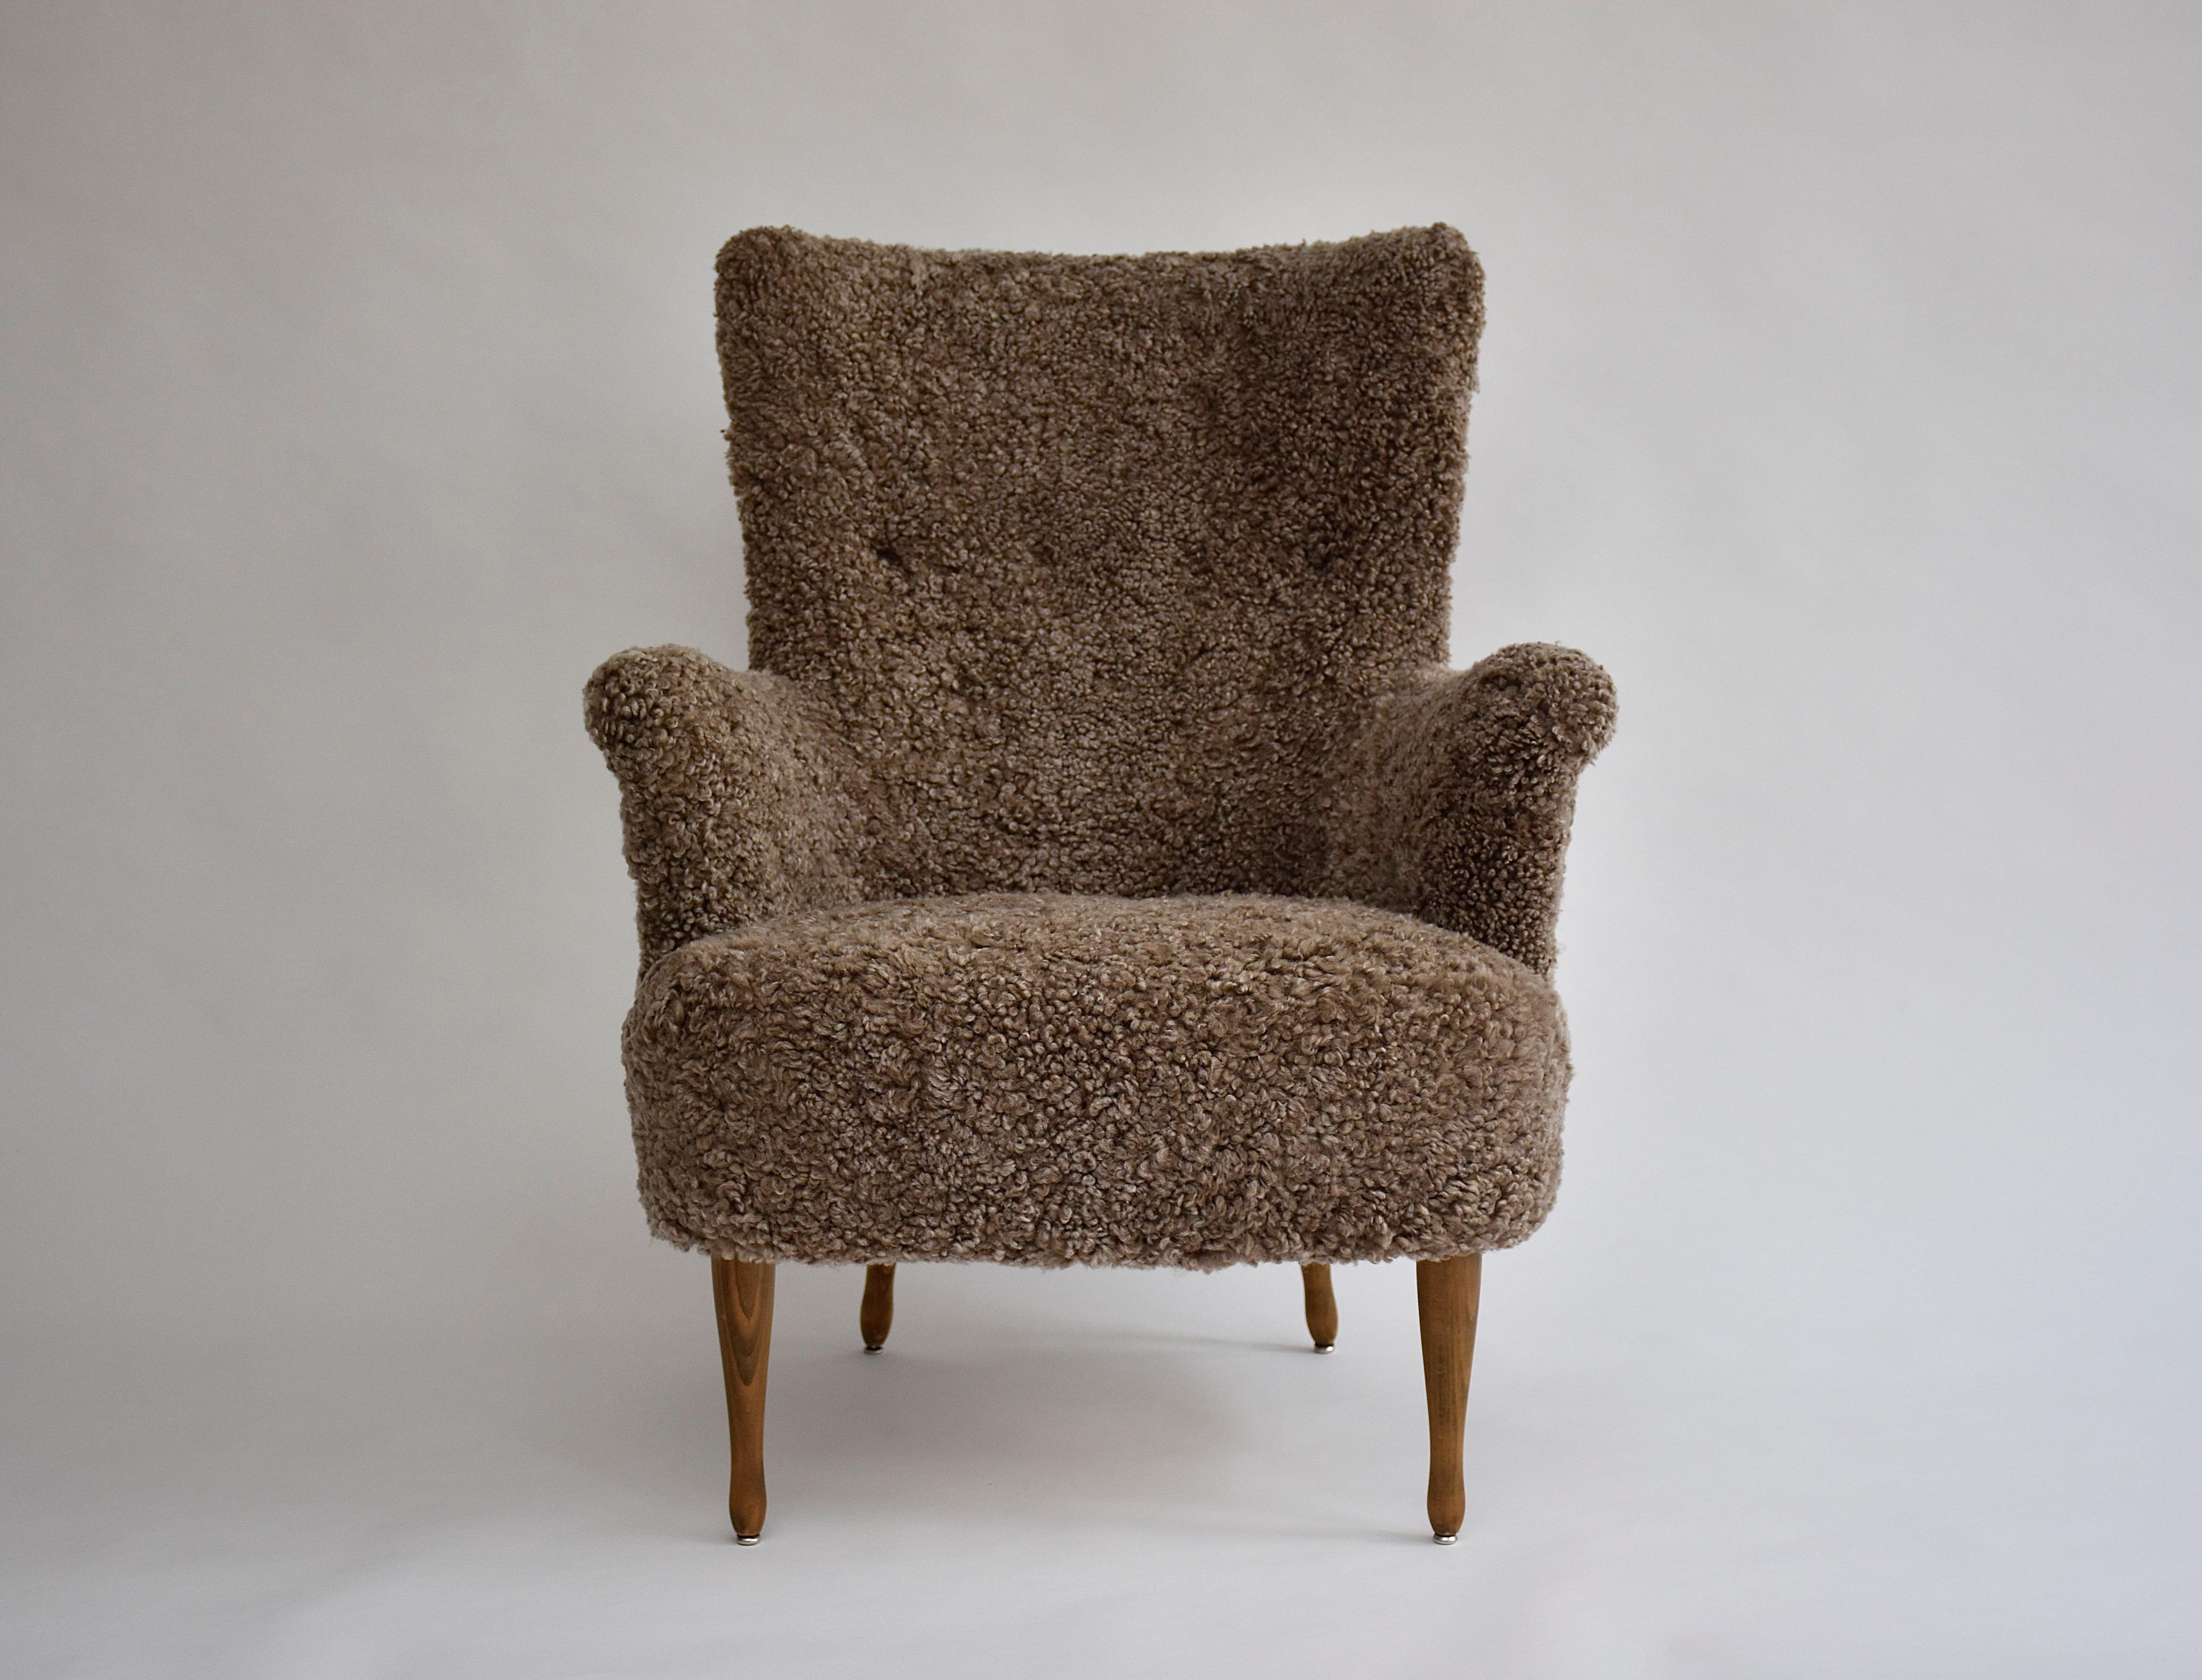 Ein atemberaubender Sessel von dem berühmten Möbeldesigner Carl Malmsten.
Dieser ikonische Stuhl bietet hohen Komfort und ist von dauerhafter Qualität. 
Rücken mit Knöpfen getuftet, elegante Armschwünge und Holzbeine. 
Neue weiche Polsterung aus